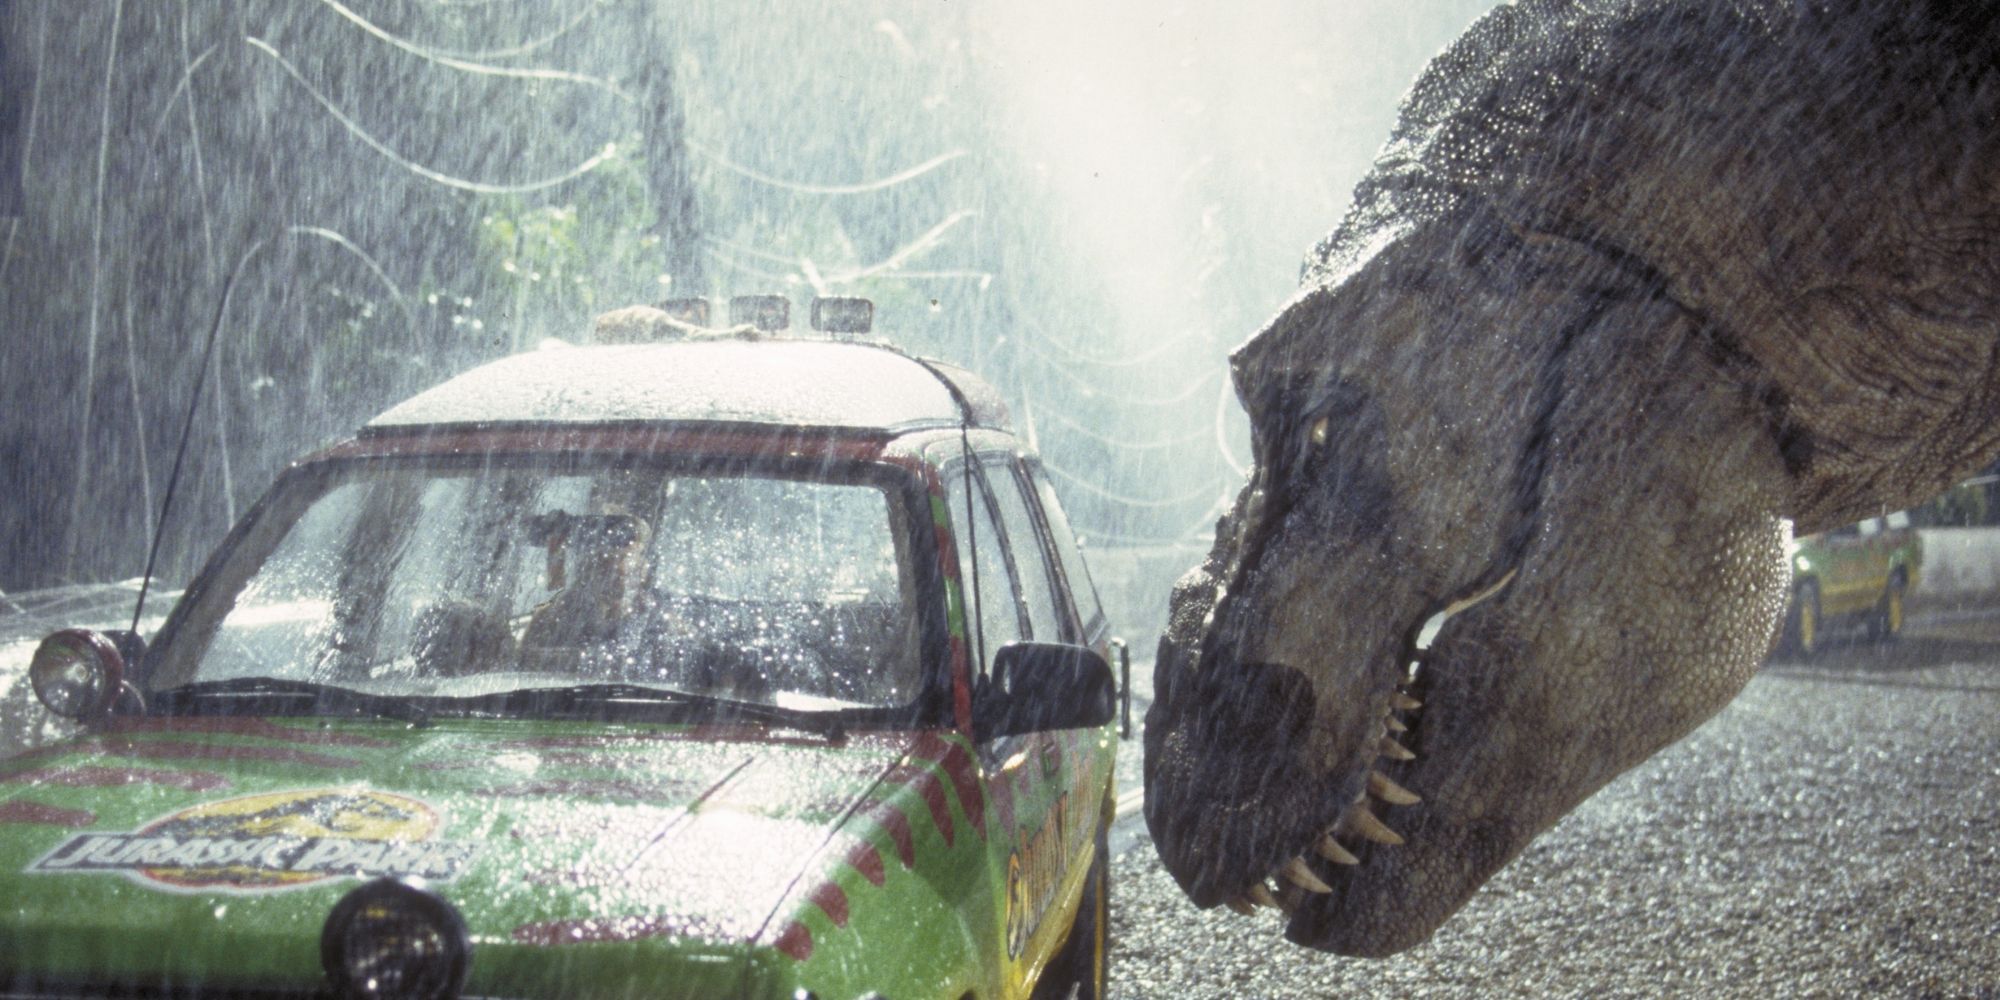 A dinosaur looking at a Jurassic Park vehicle